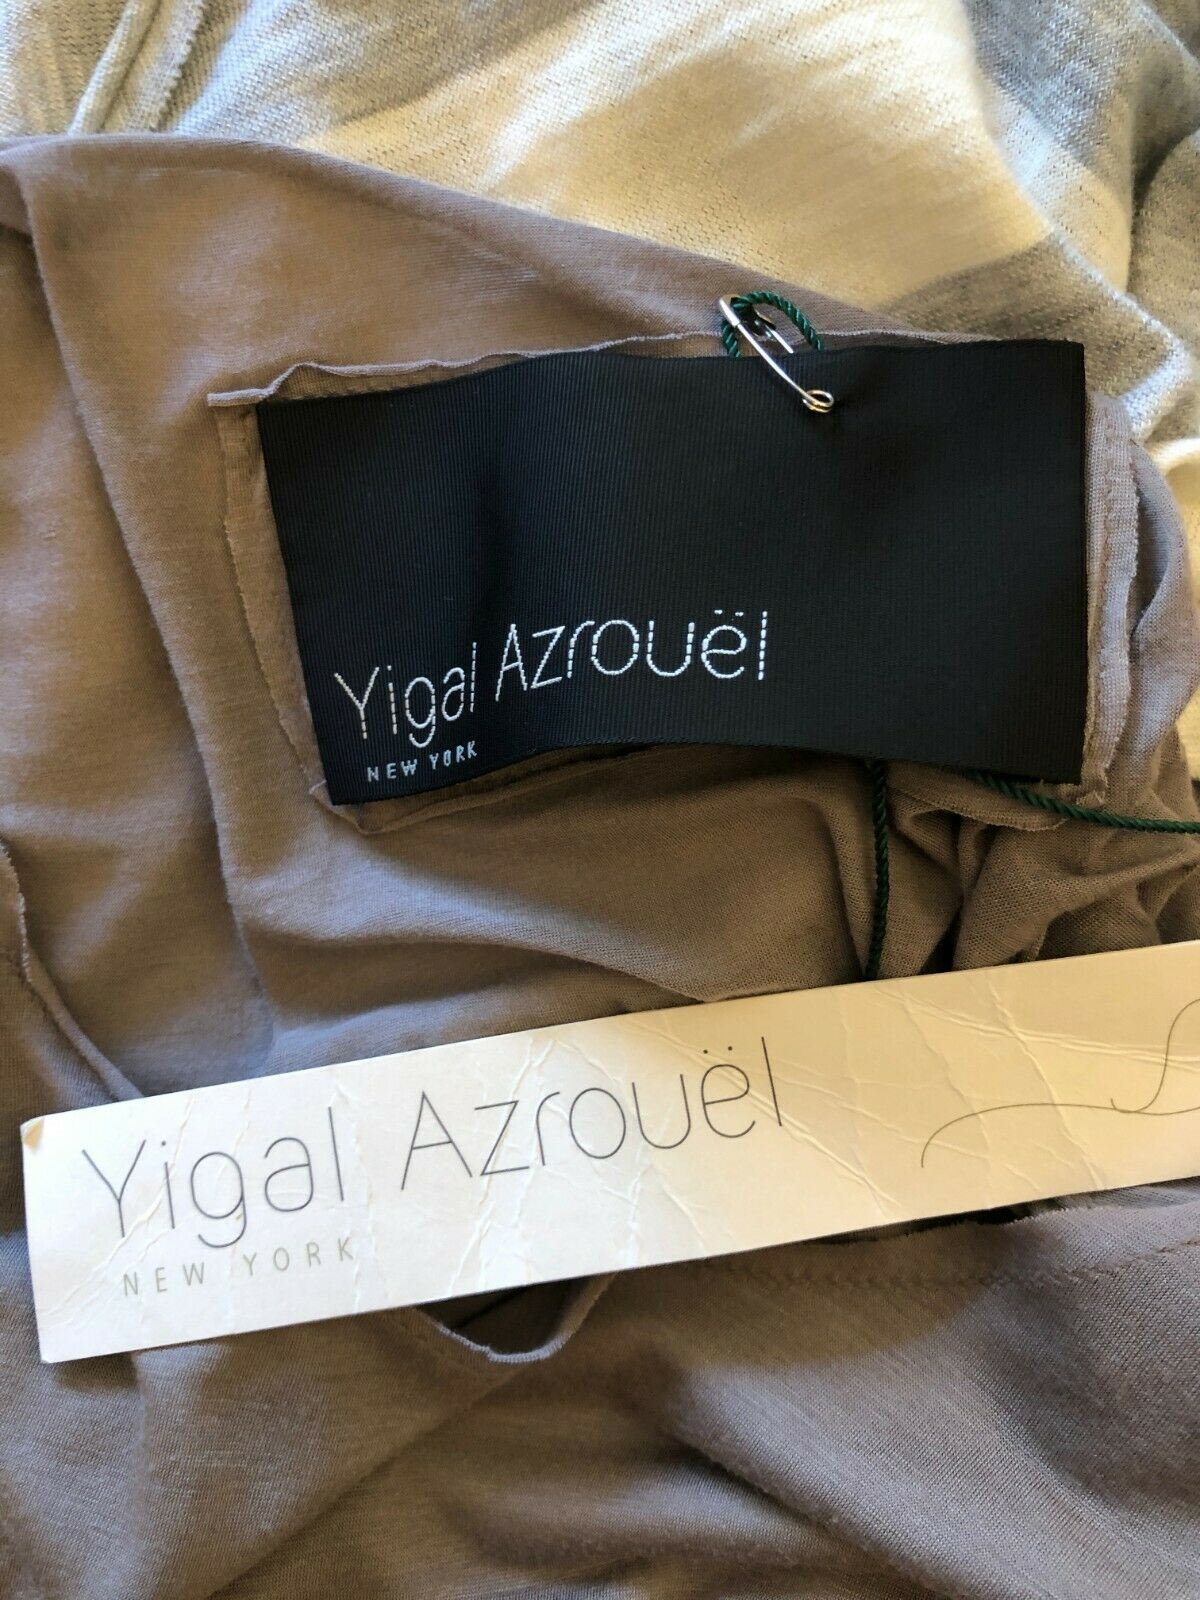 Yigal Azrouël Ivory & Grey Stripe Cotton & Wool Dress Size 0 UK 8 US 4 EU 36 Timeless Fashions